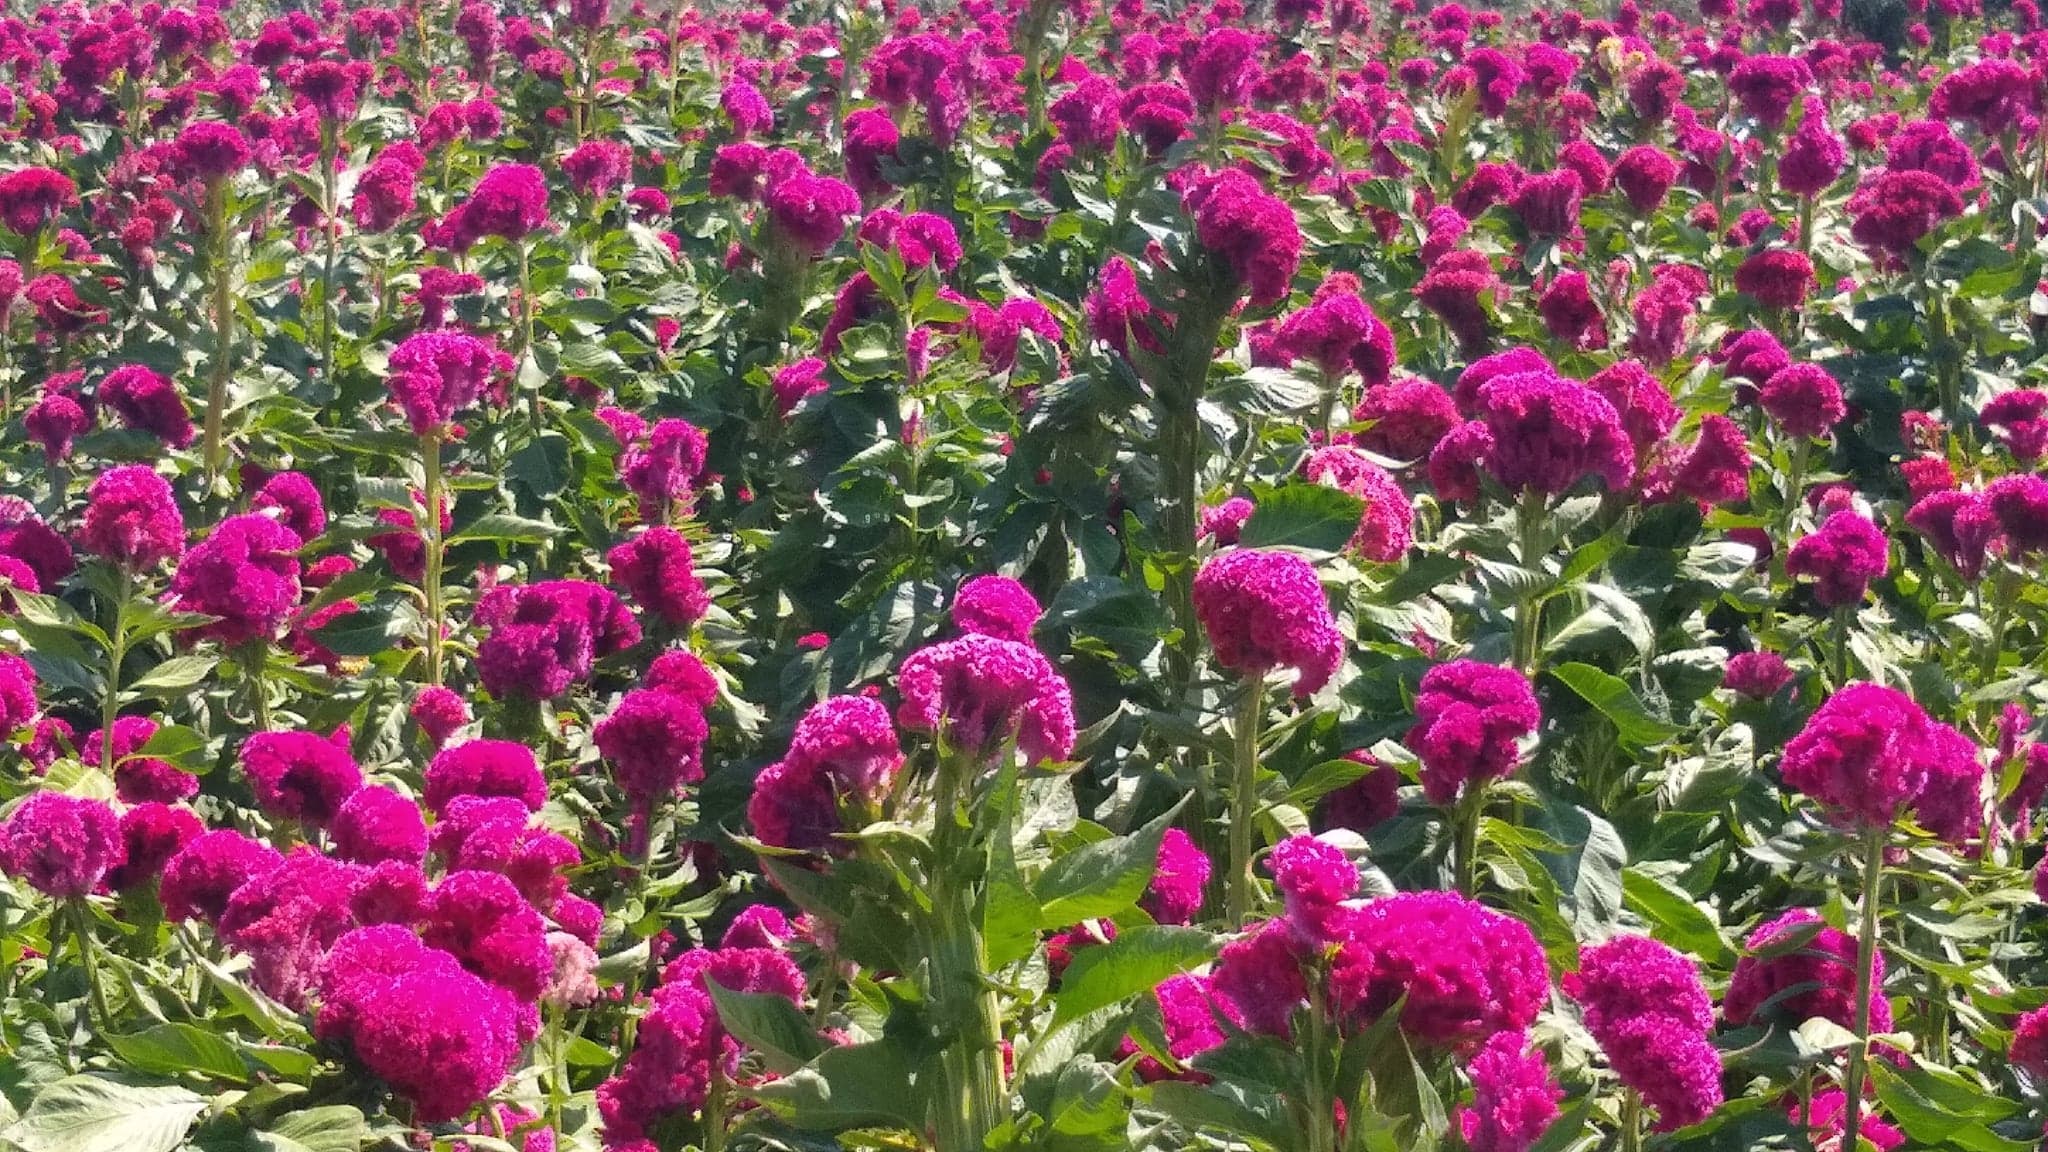 Productores de flor de temporada prevén bajas ventas en Tehuacán